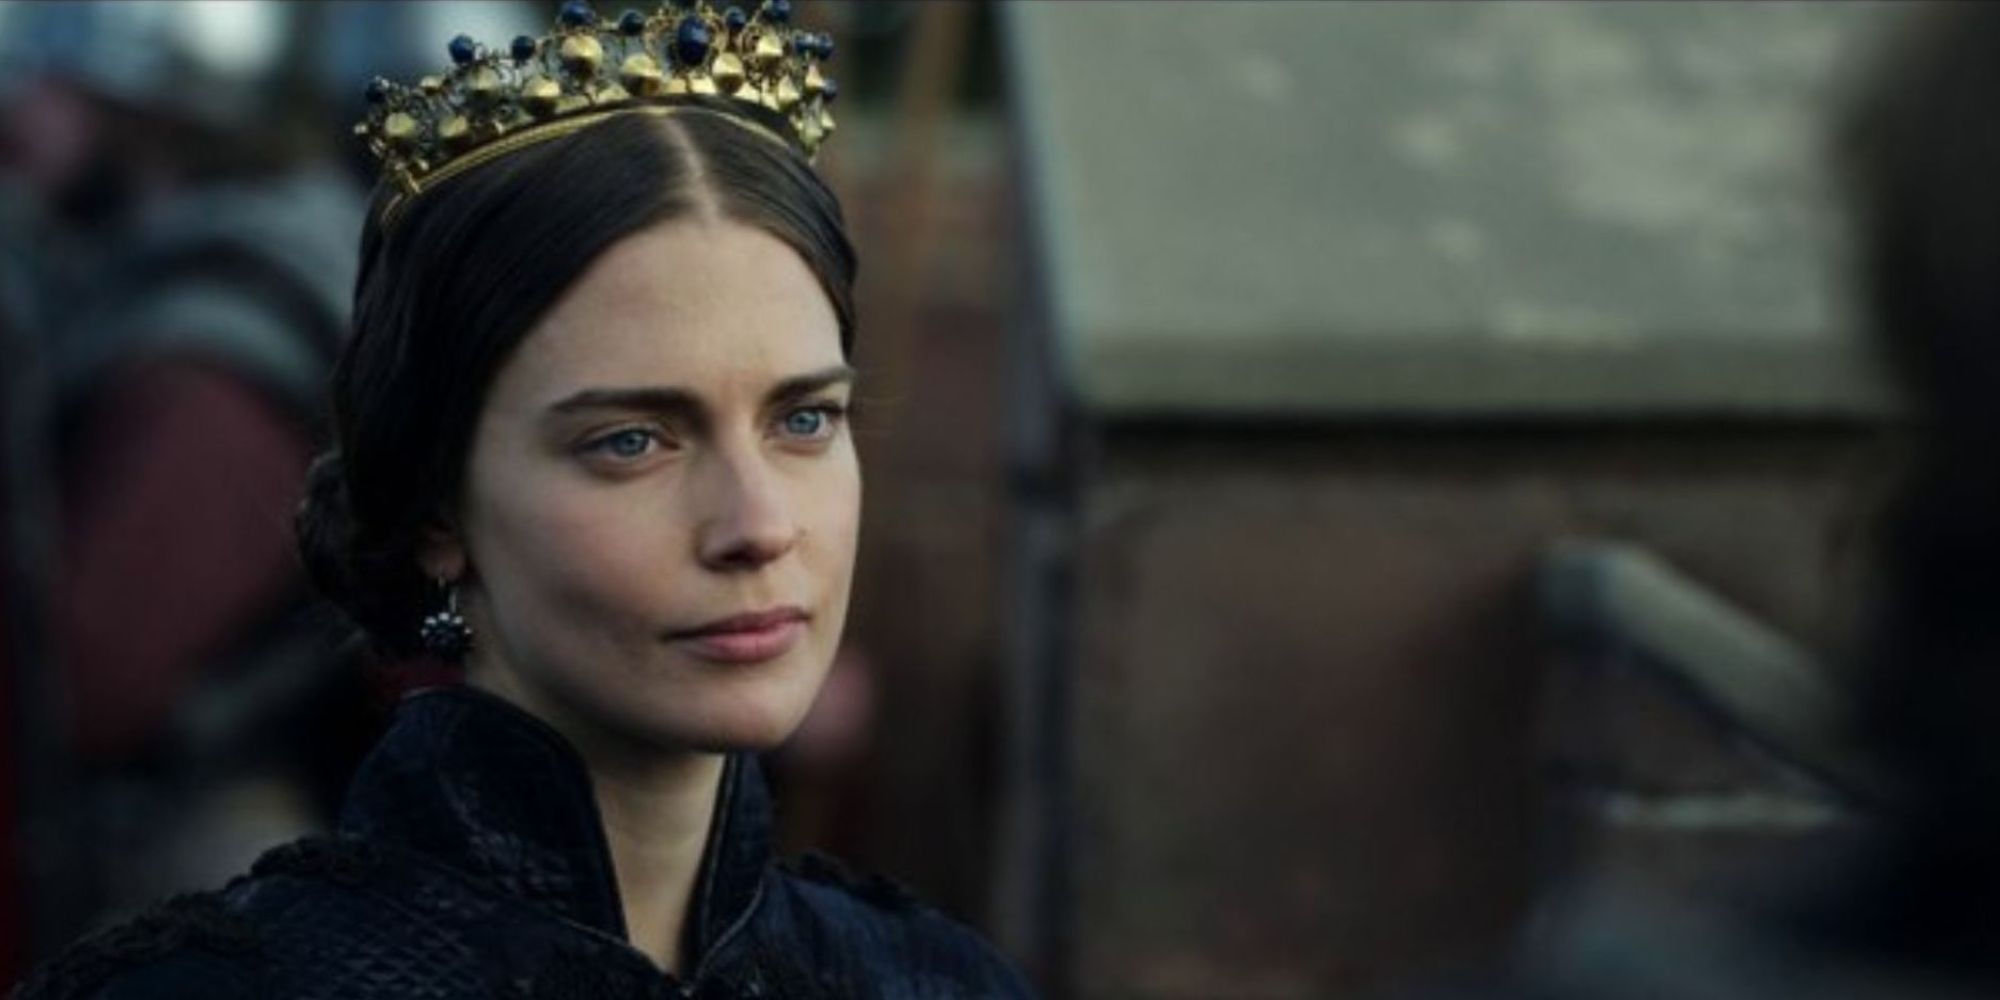 Queen Emma wearing a golden crown